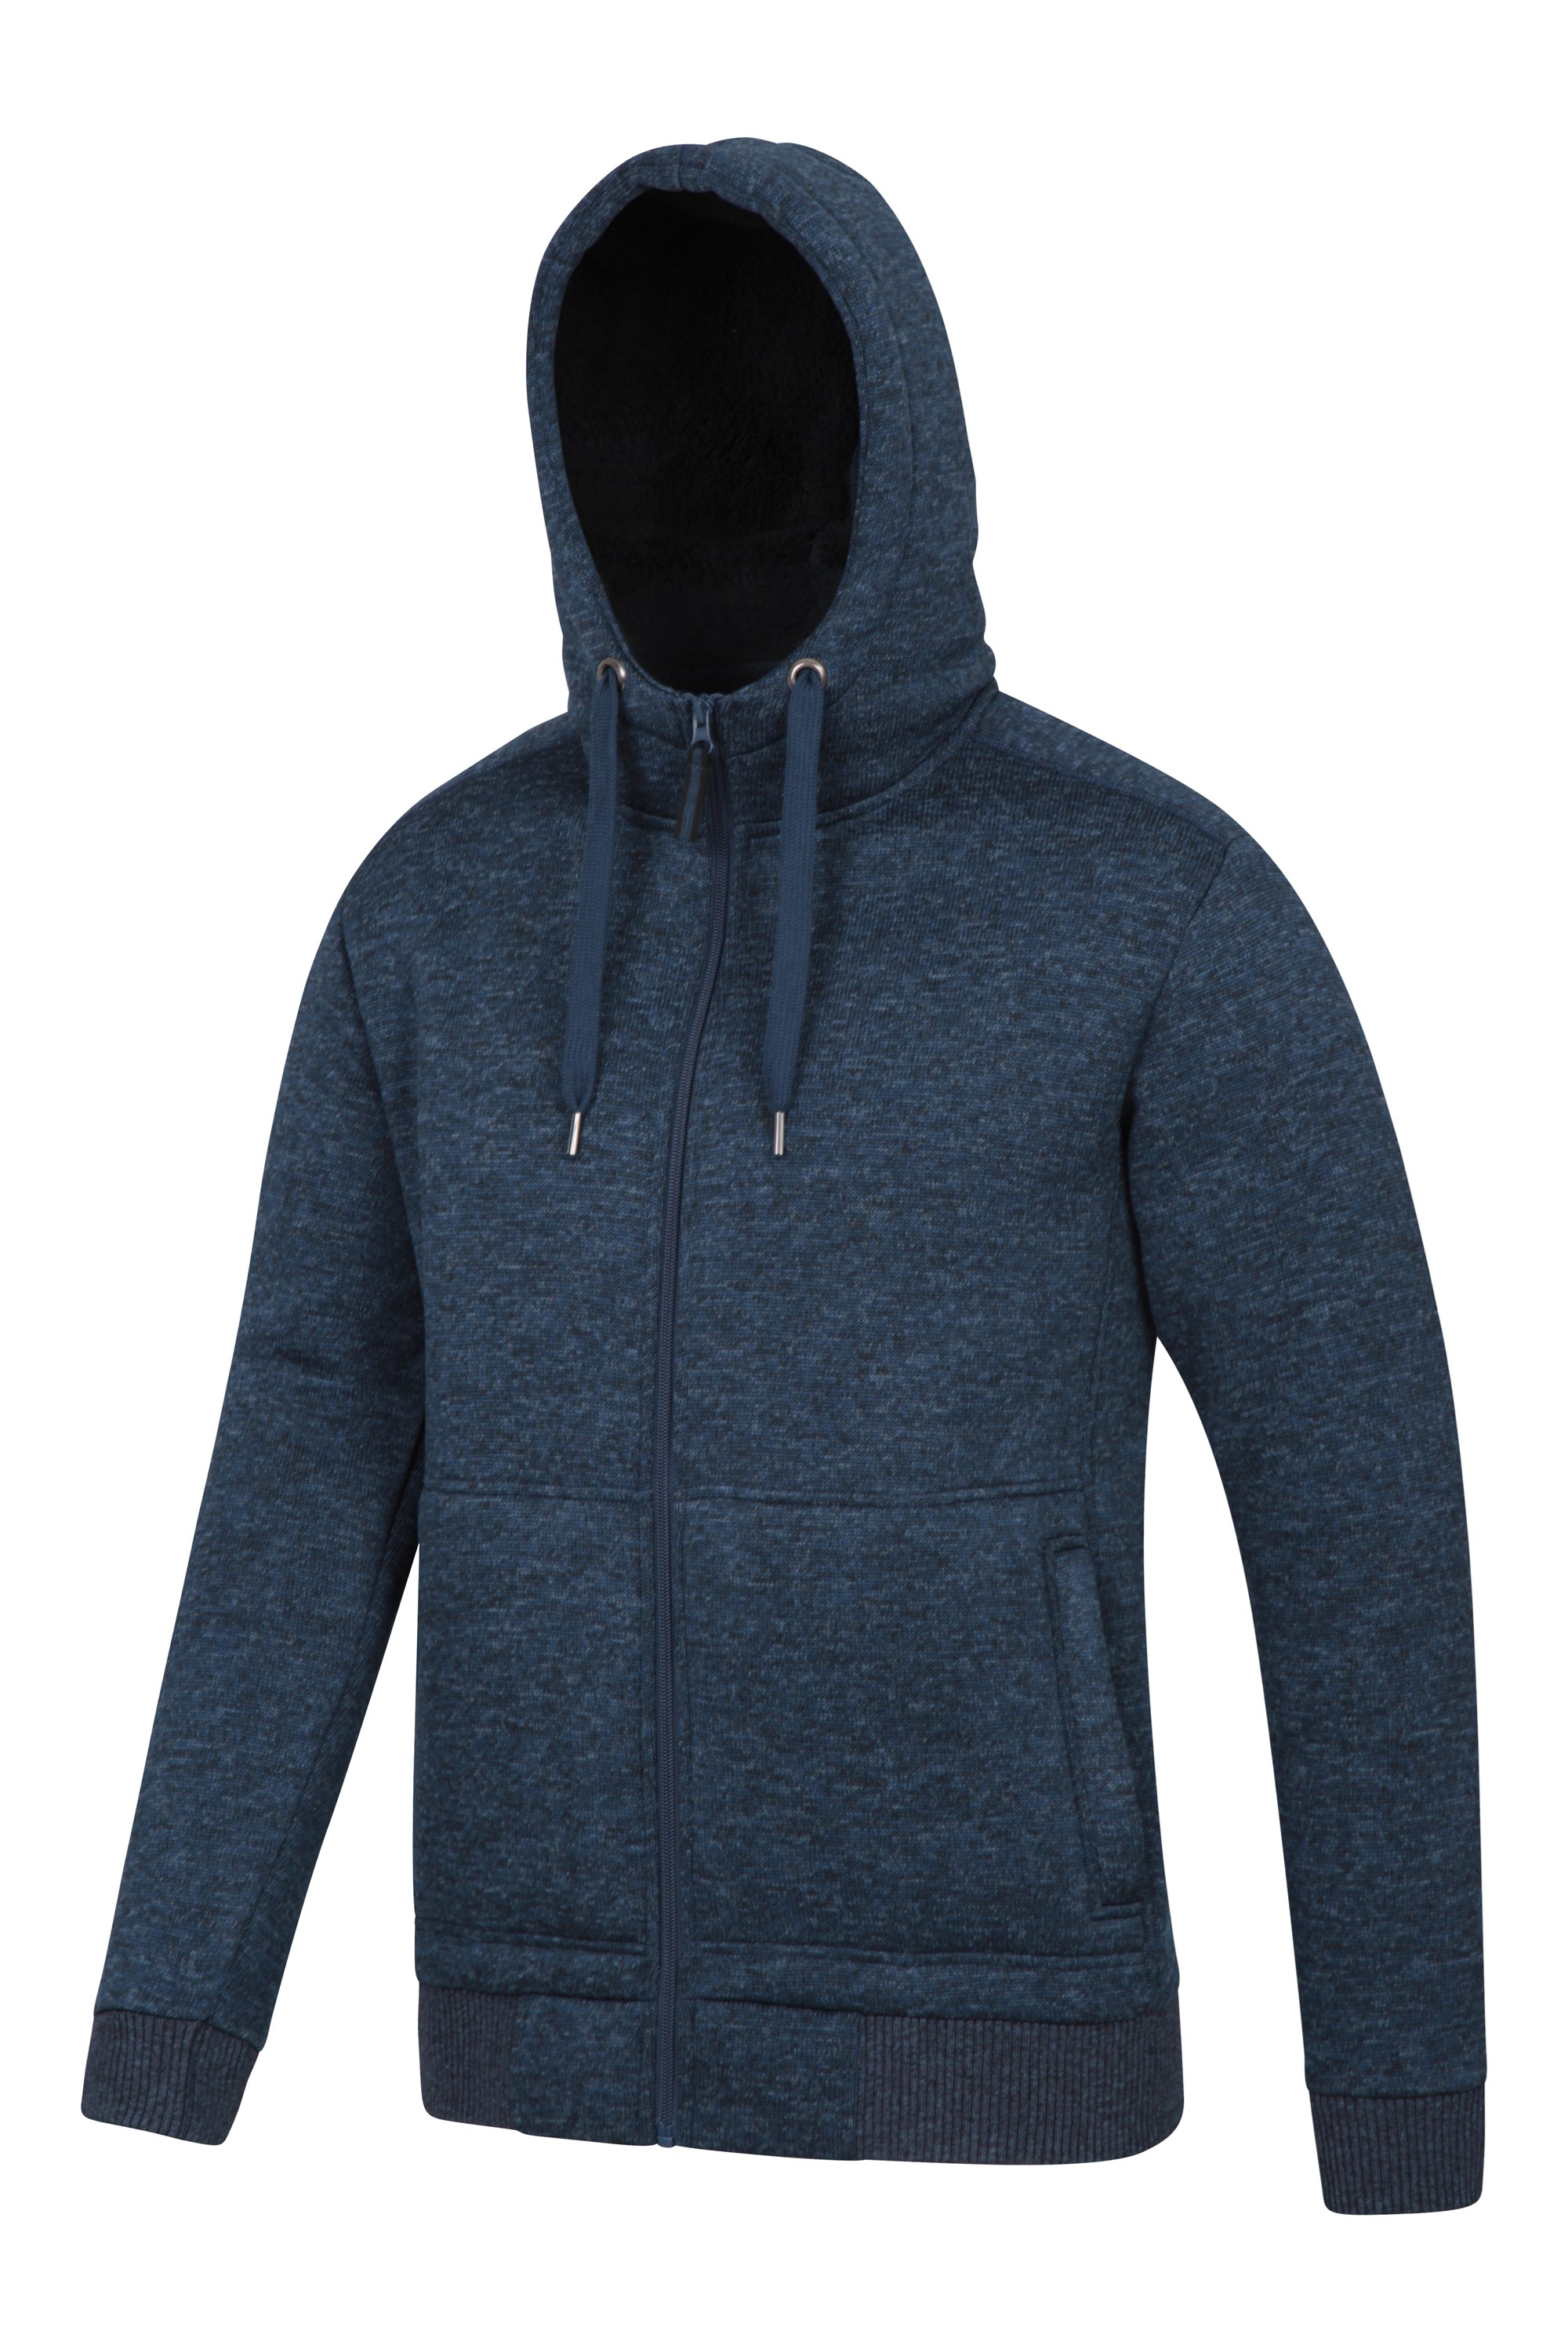 wool lined hoodie mens